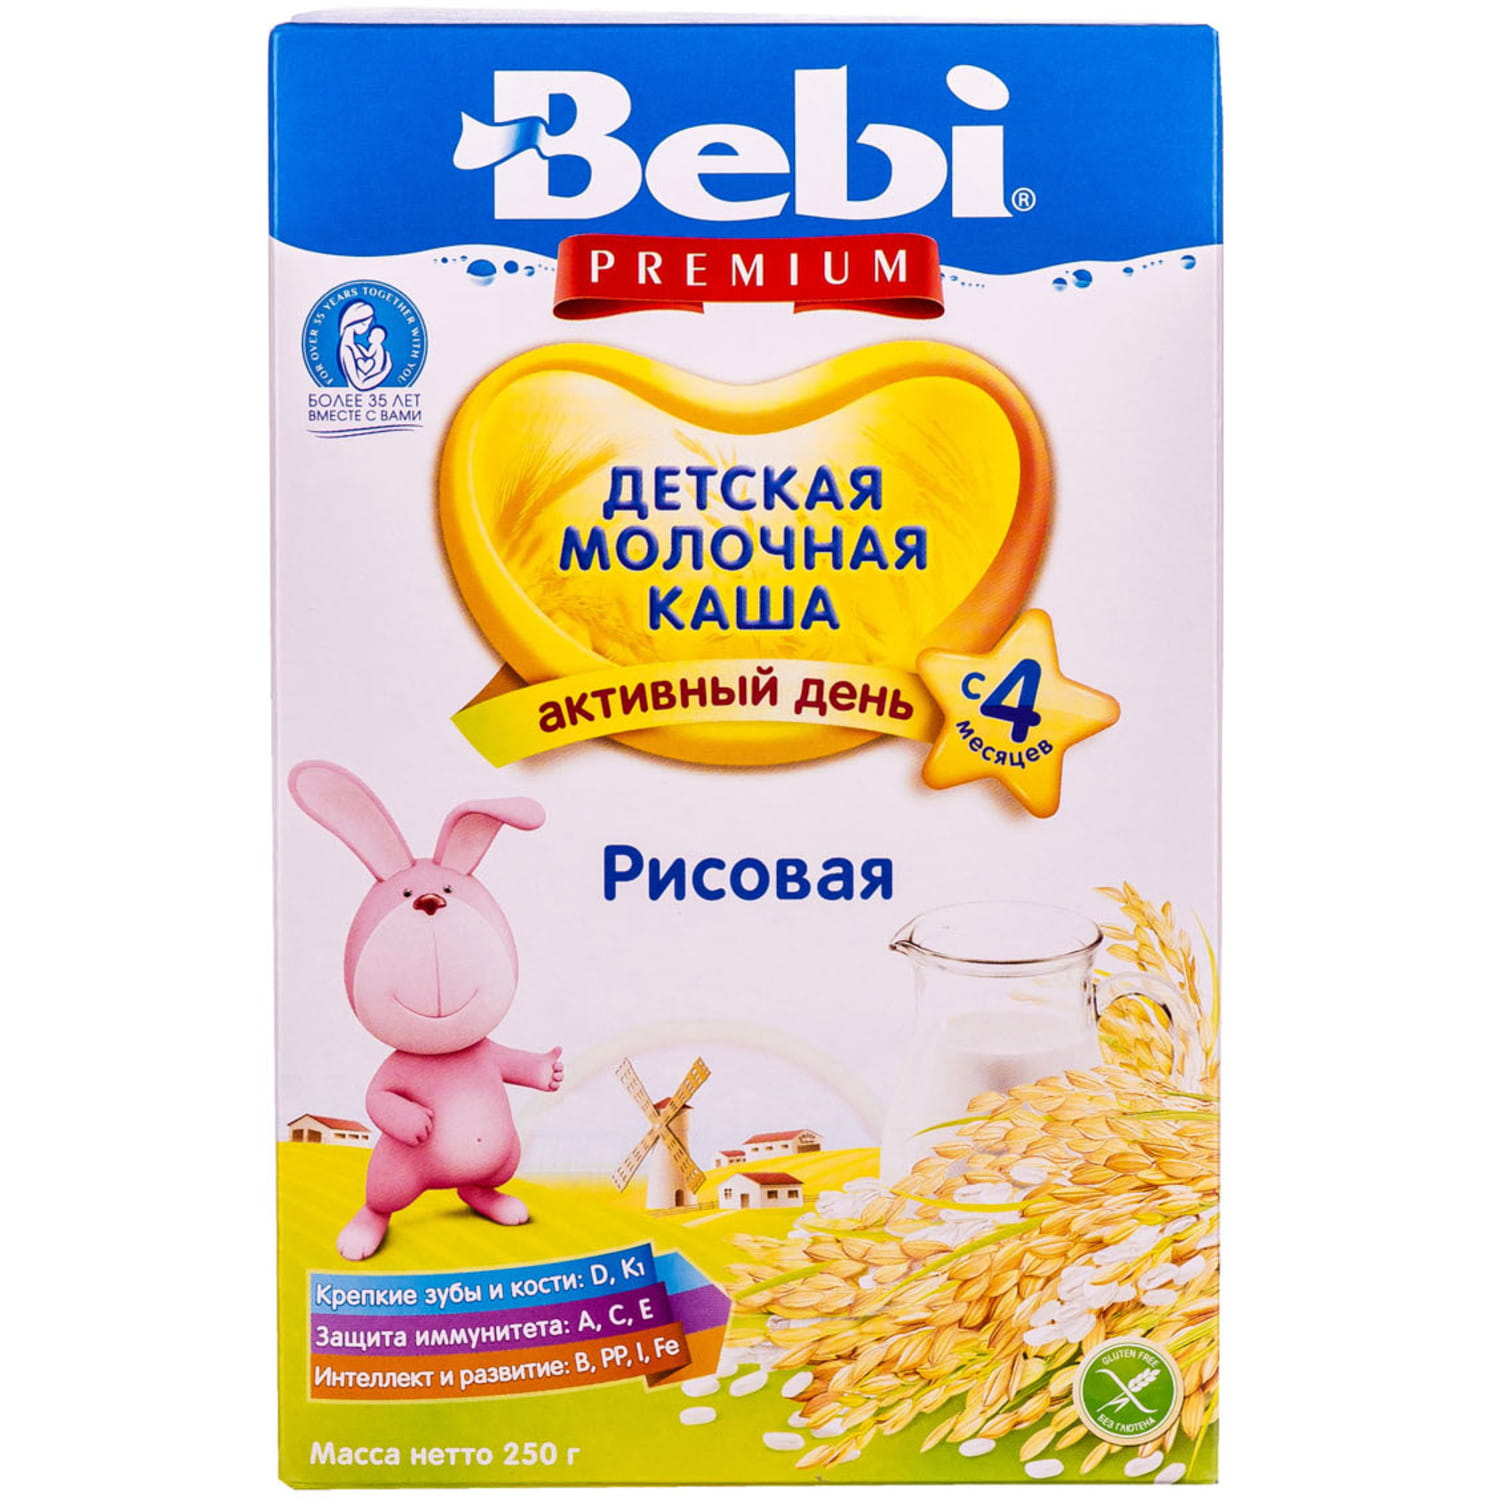 Детские готовые каши. Детские каши Bebi Premium. Рисовая каша Беби премиум. Каша детская молочная Беби премиум. Беби премиум безмолочная каша с 6 мес.